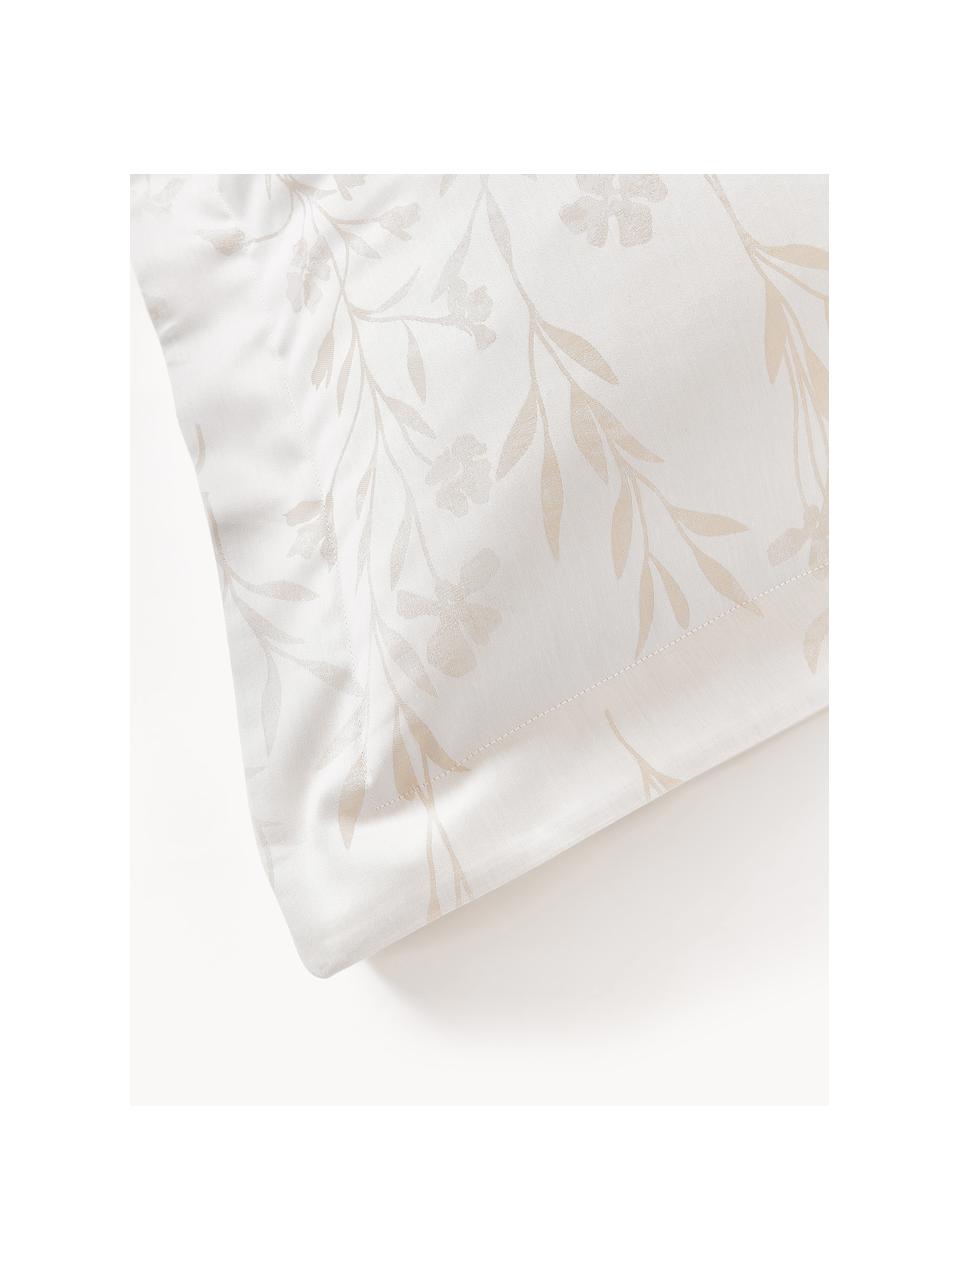 Funda de almohada de satén estampado Hurley, Blanco crema, beige claro, An 45 x L 110 cm